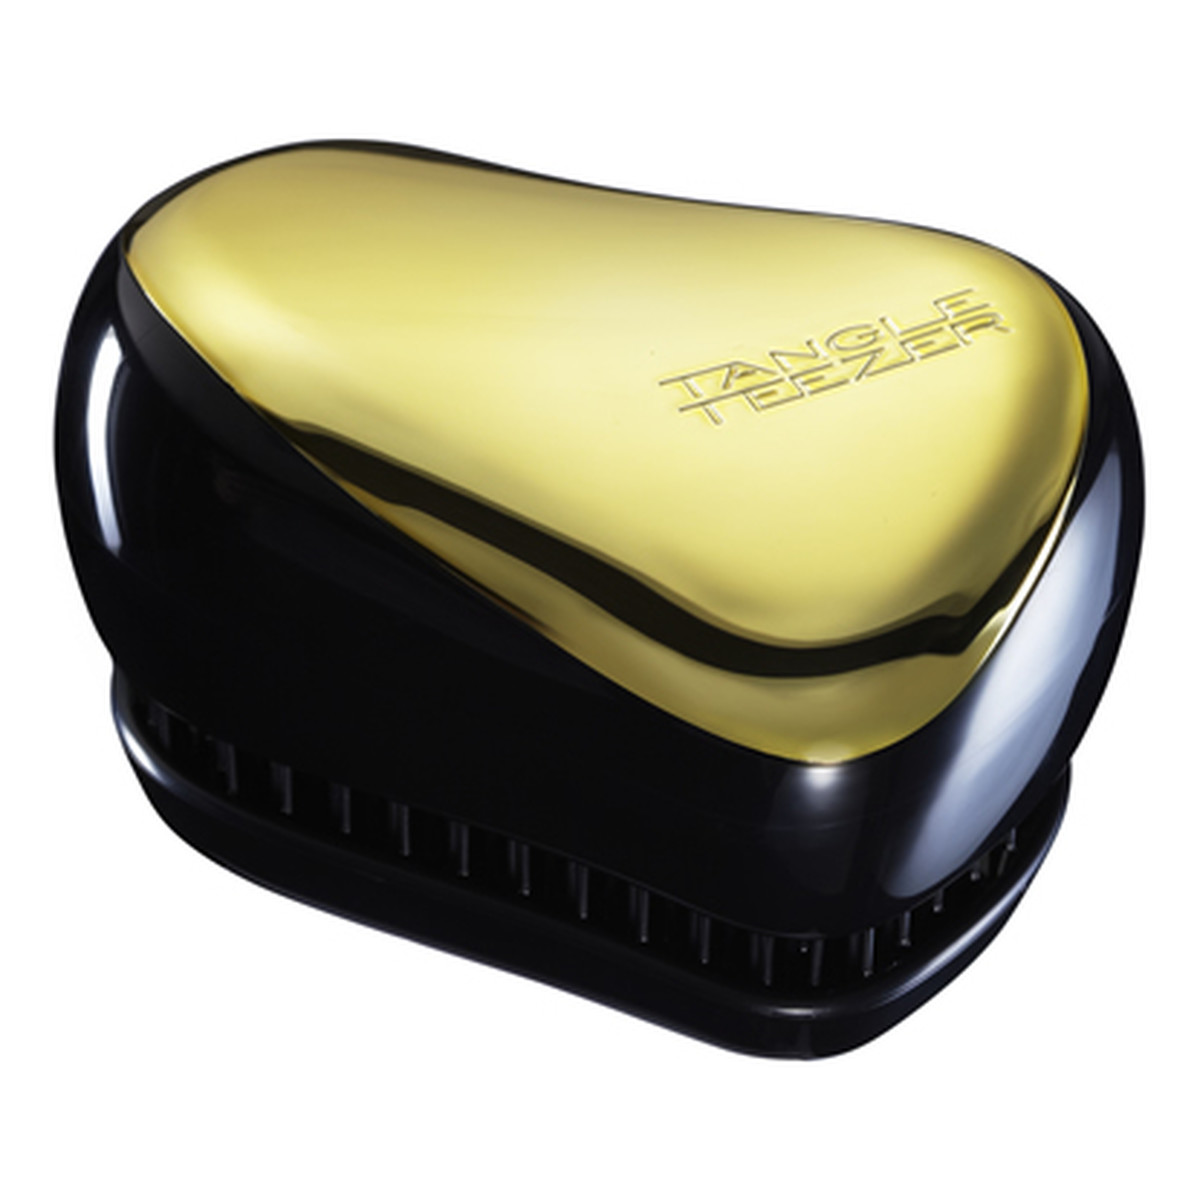 Tangle Teezer Compact Styler Gold Rush Szczotka Do Włosów Złota